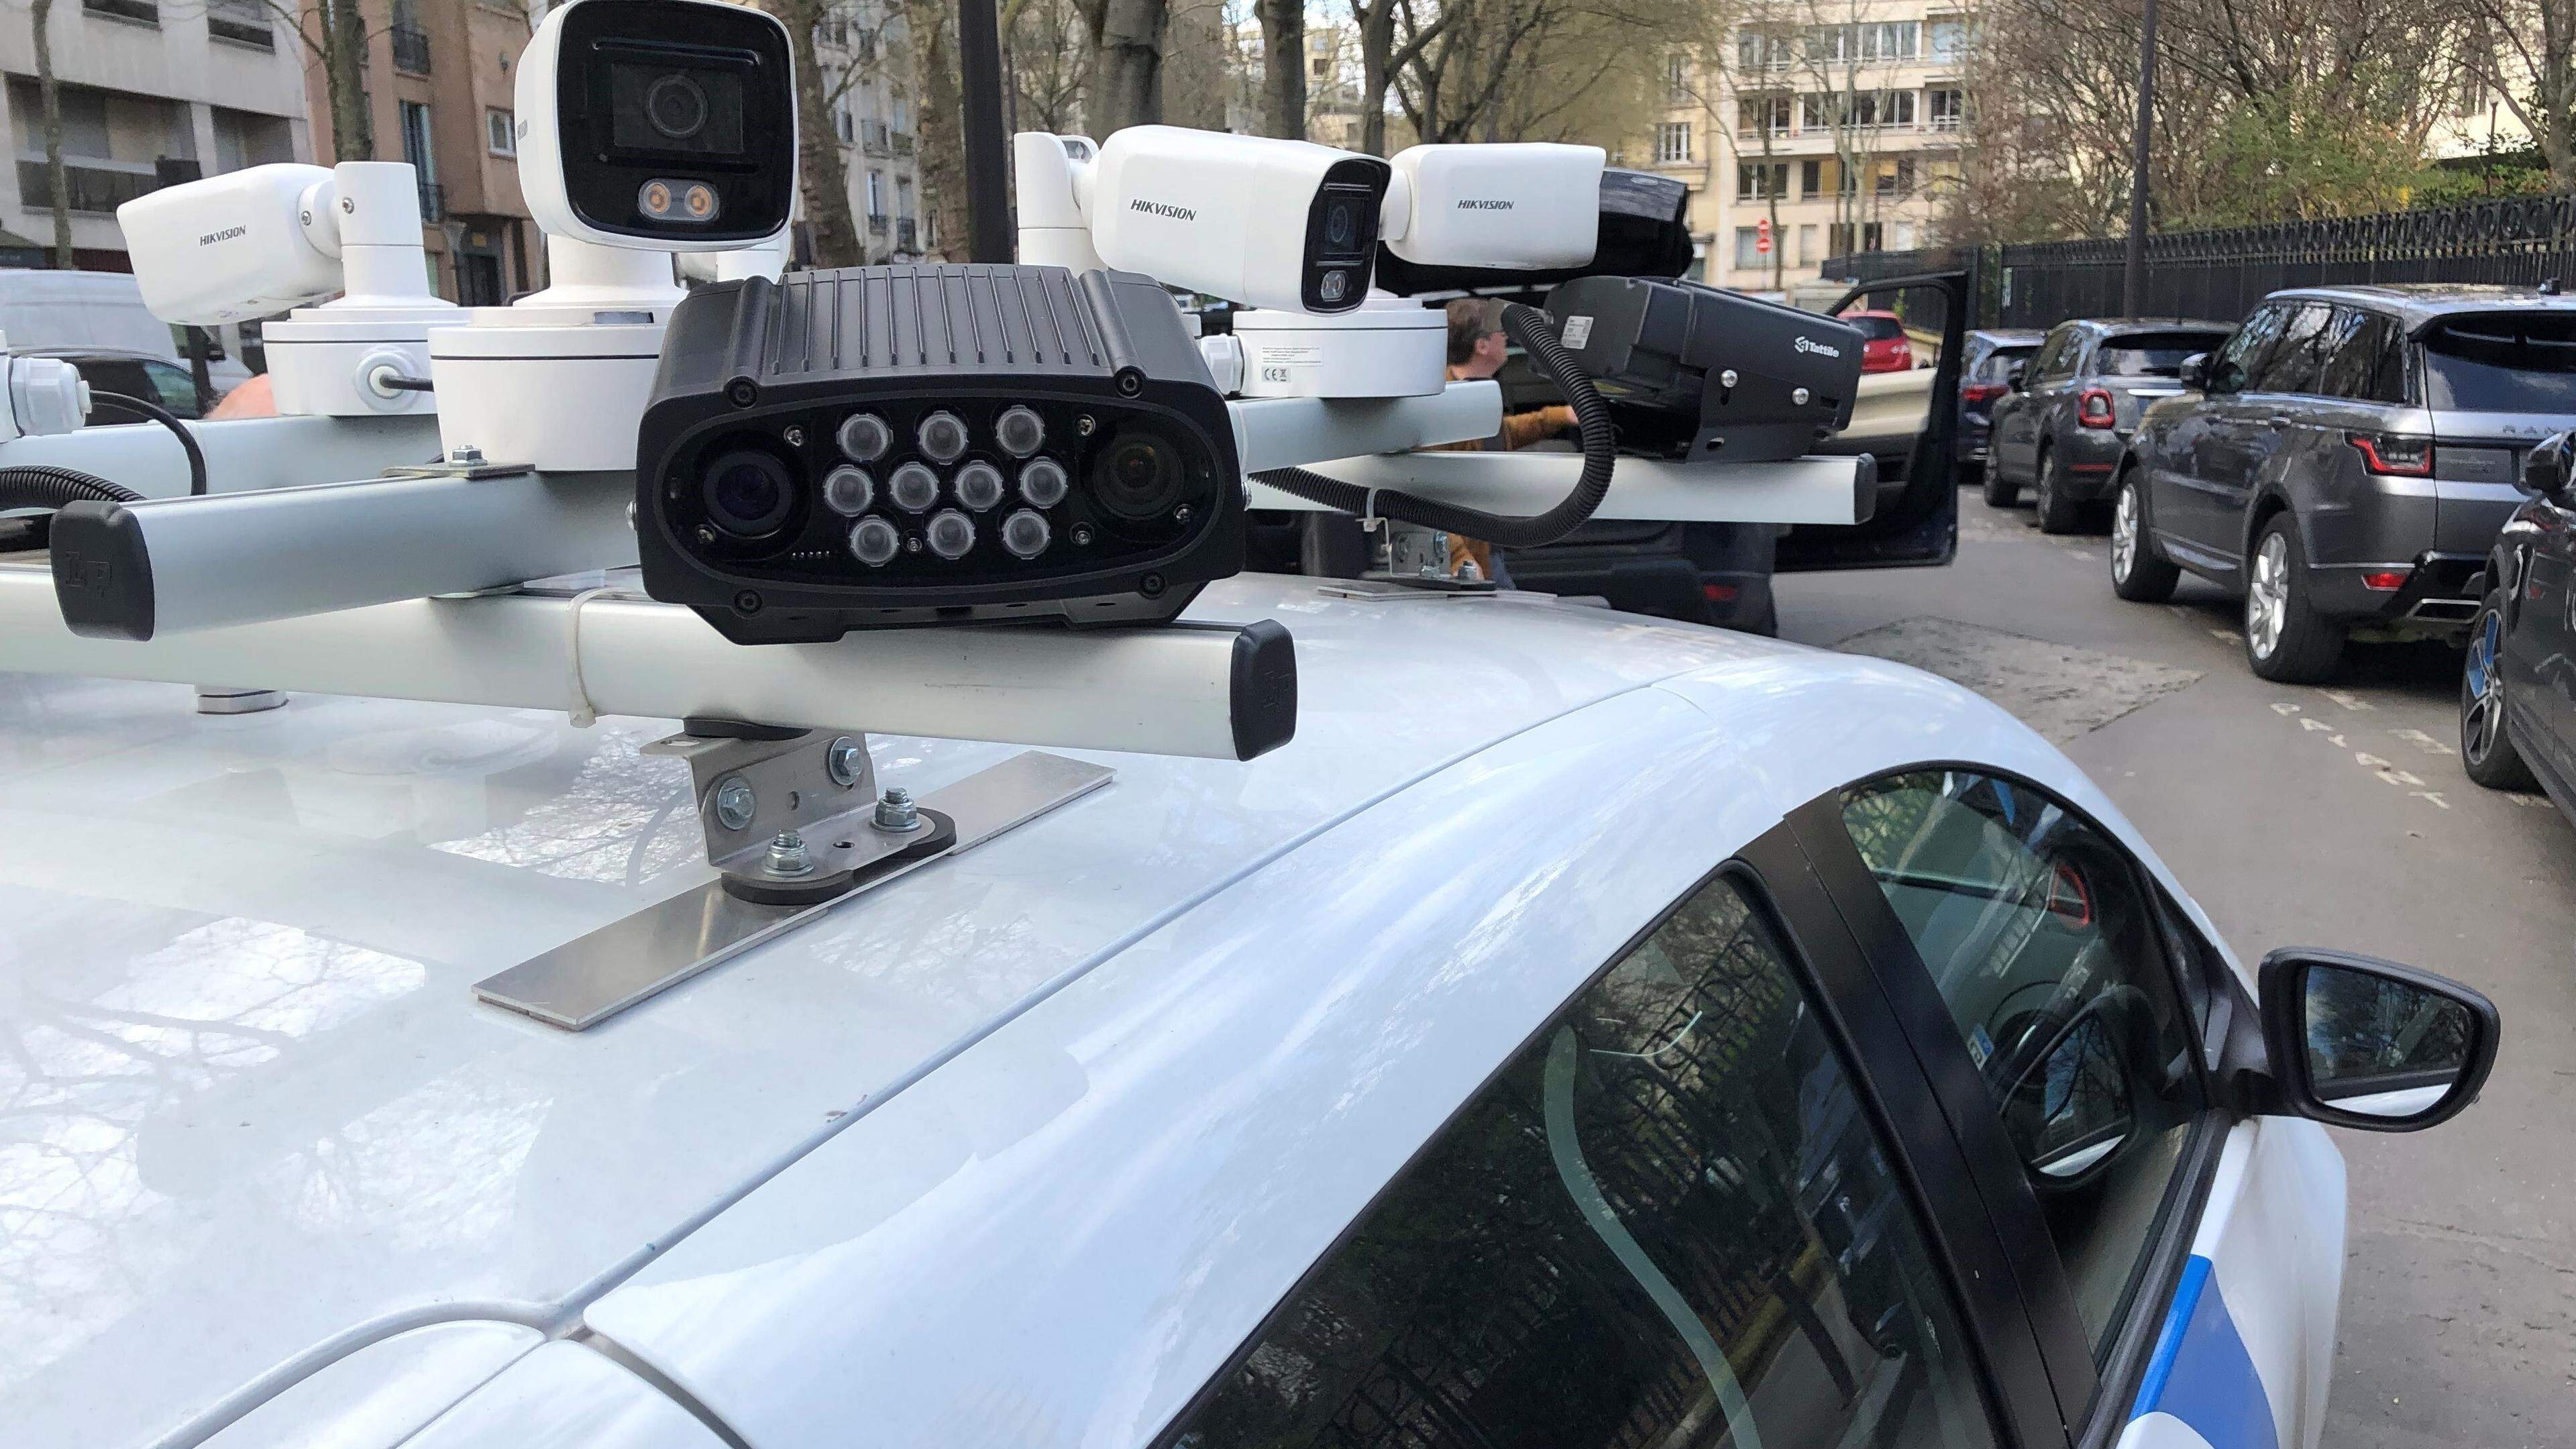 Kameras auf dem Dach eines Scan-Autos dienen der Kontrolle, ob für abgestellte Autos die Parkgebühren bezahlt wurden.